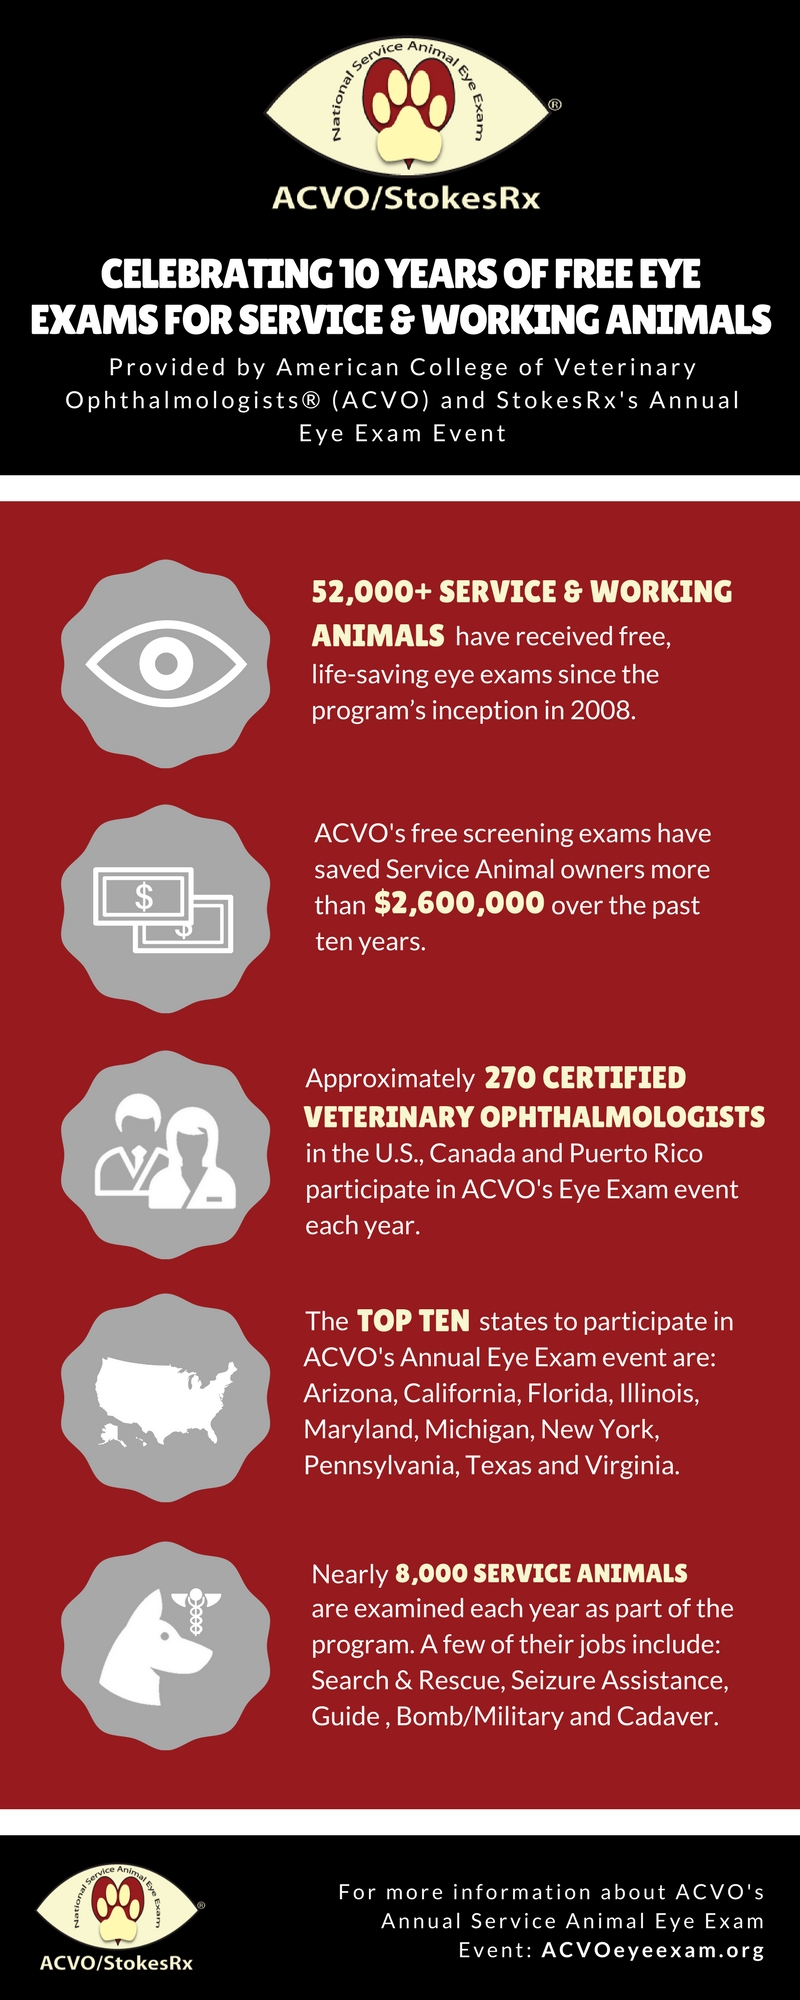 ACVO_10 Year Anniversary Infographic_FINAL_03 20 17.jpg